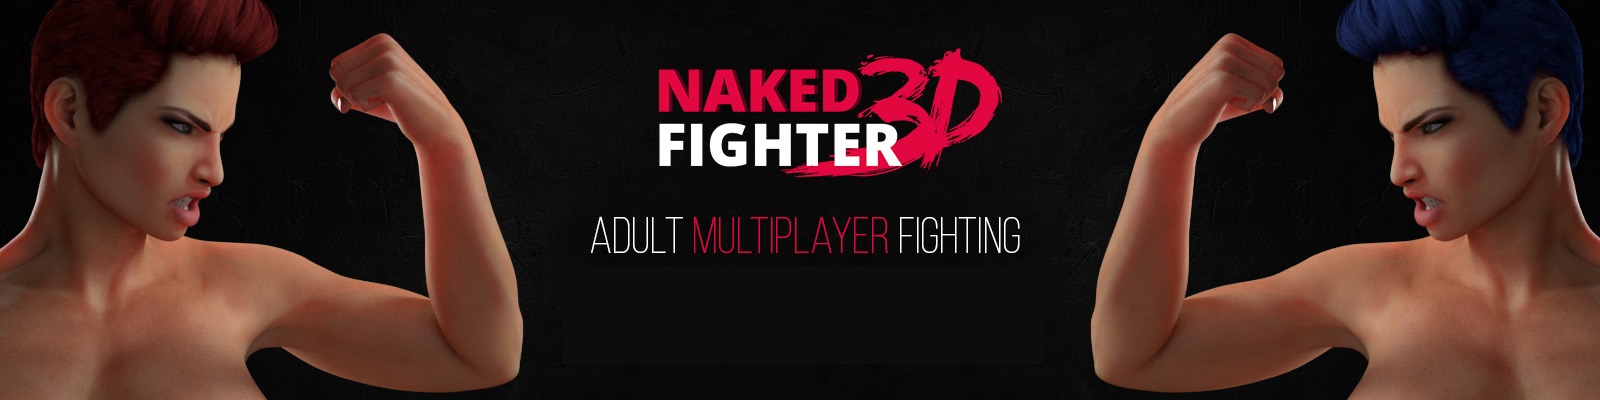 Sam3DX - Naked Fighter 3D Version 0.08 Ultimate